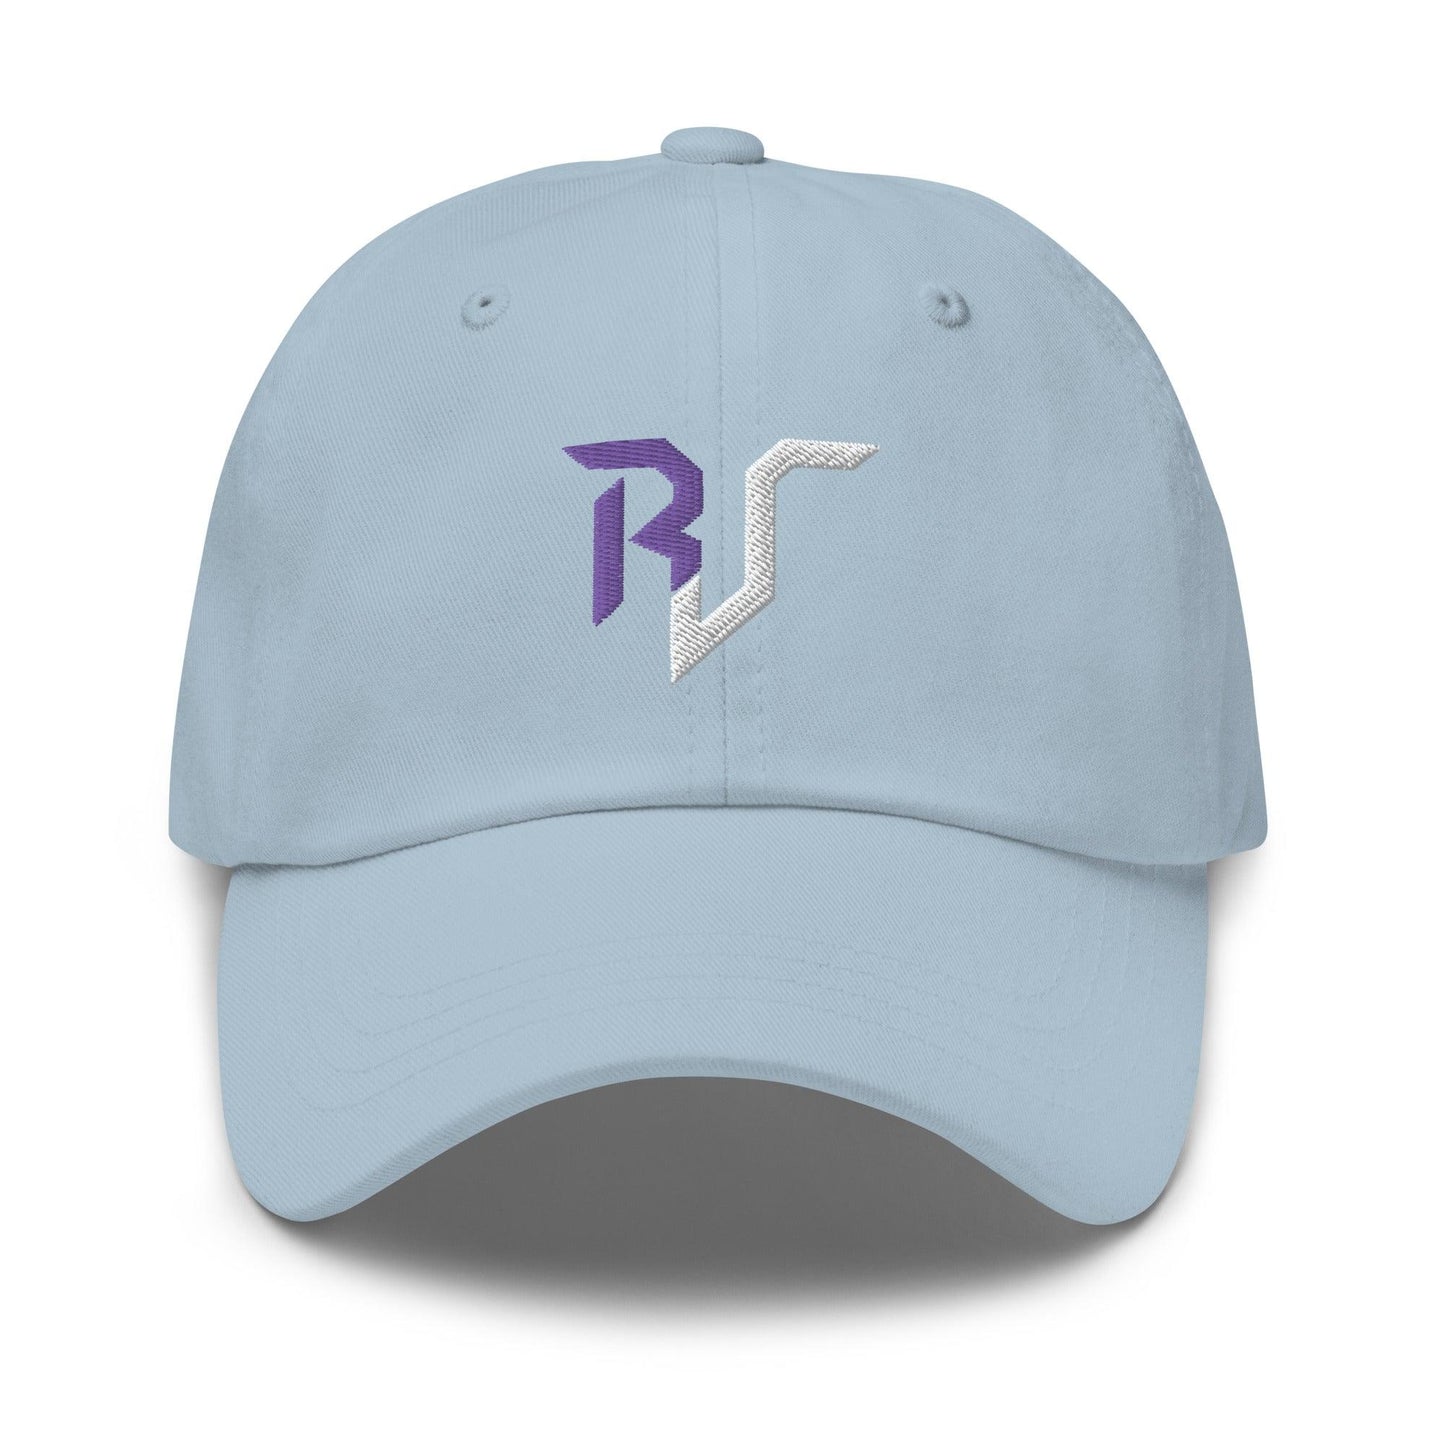 Russell Jones “RJ” hat - Fan Arch